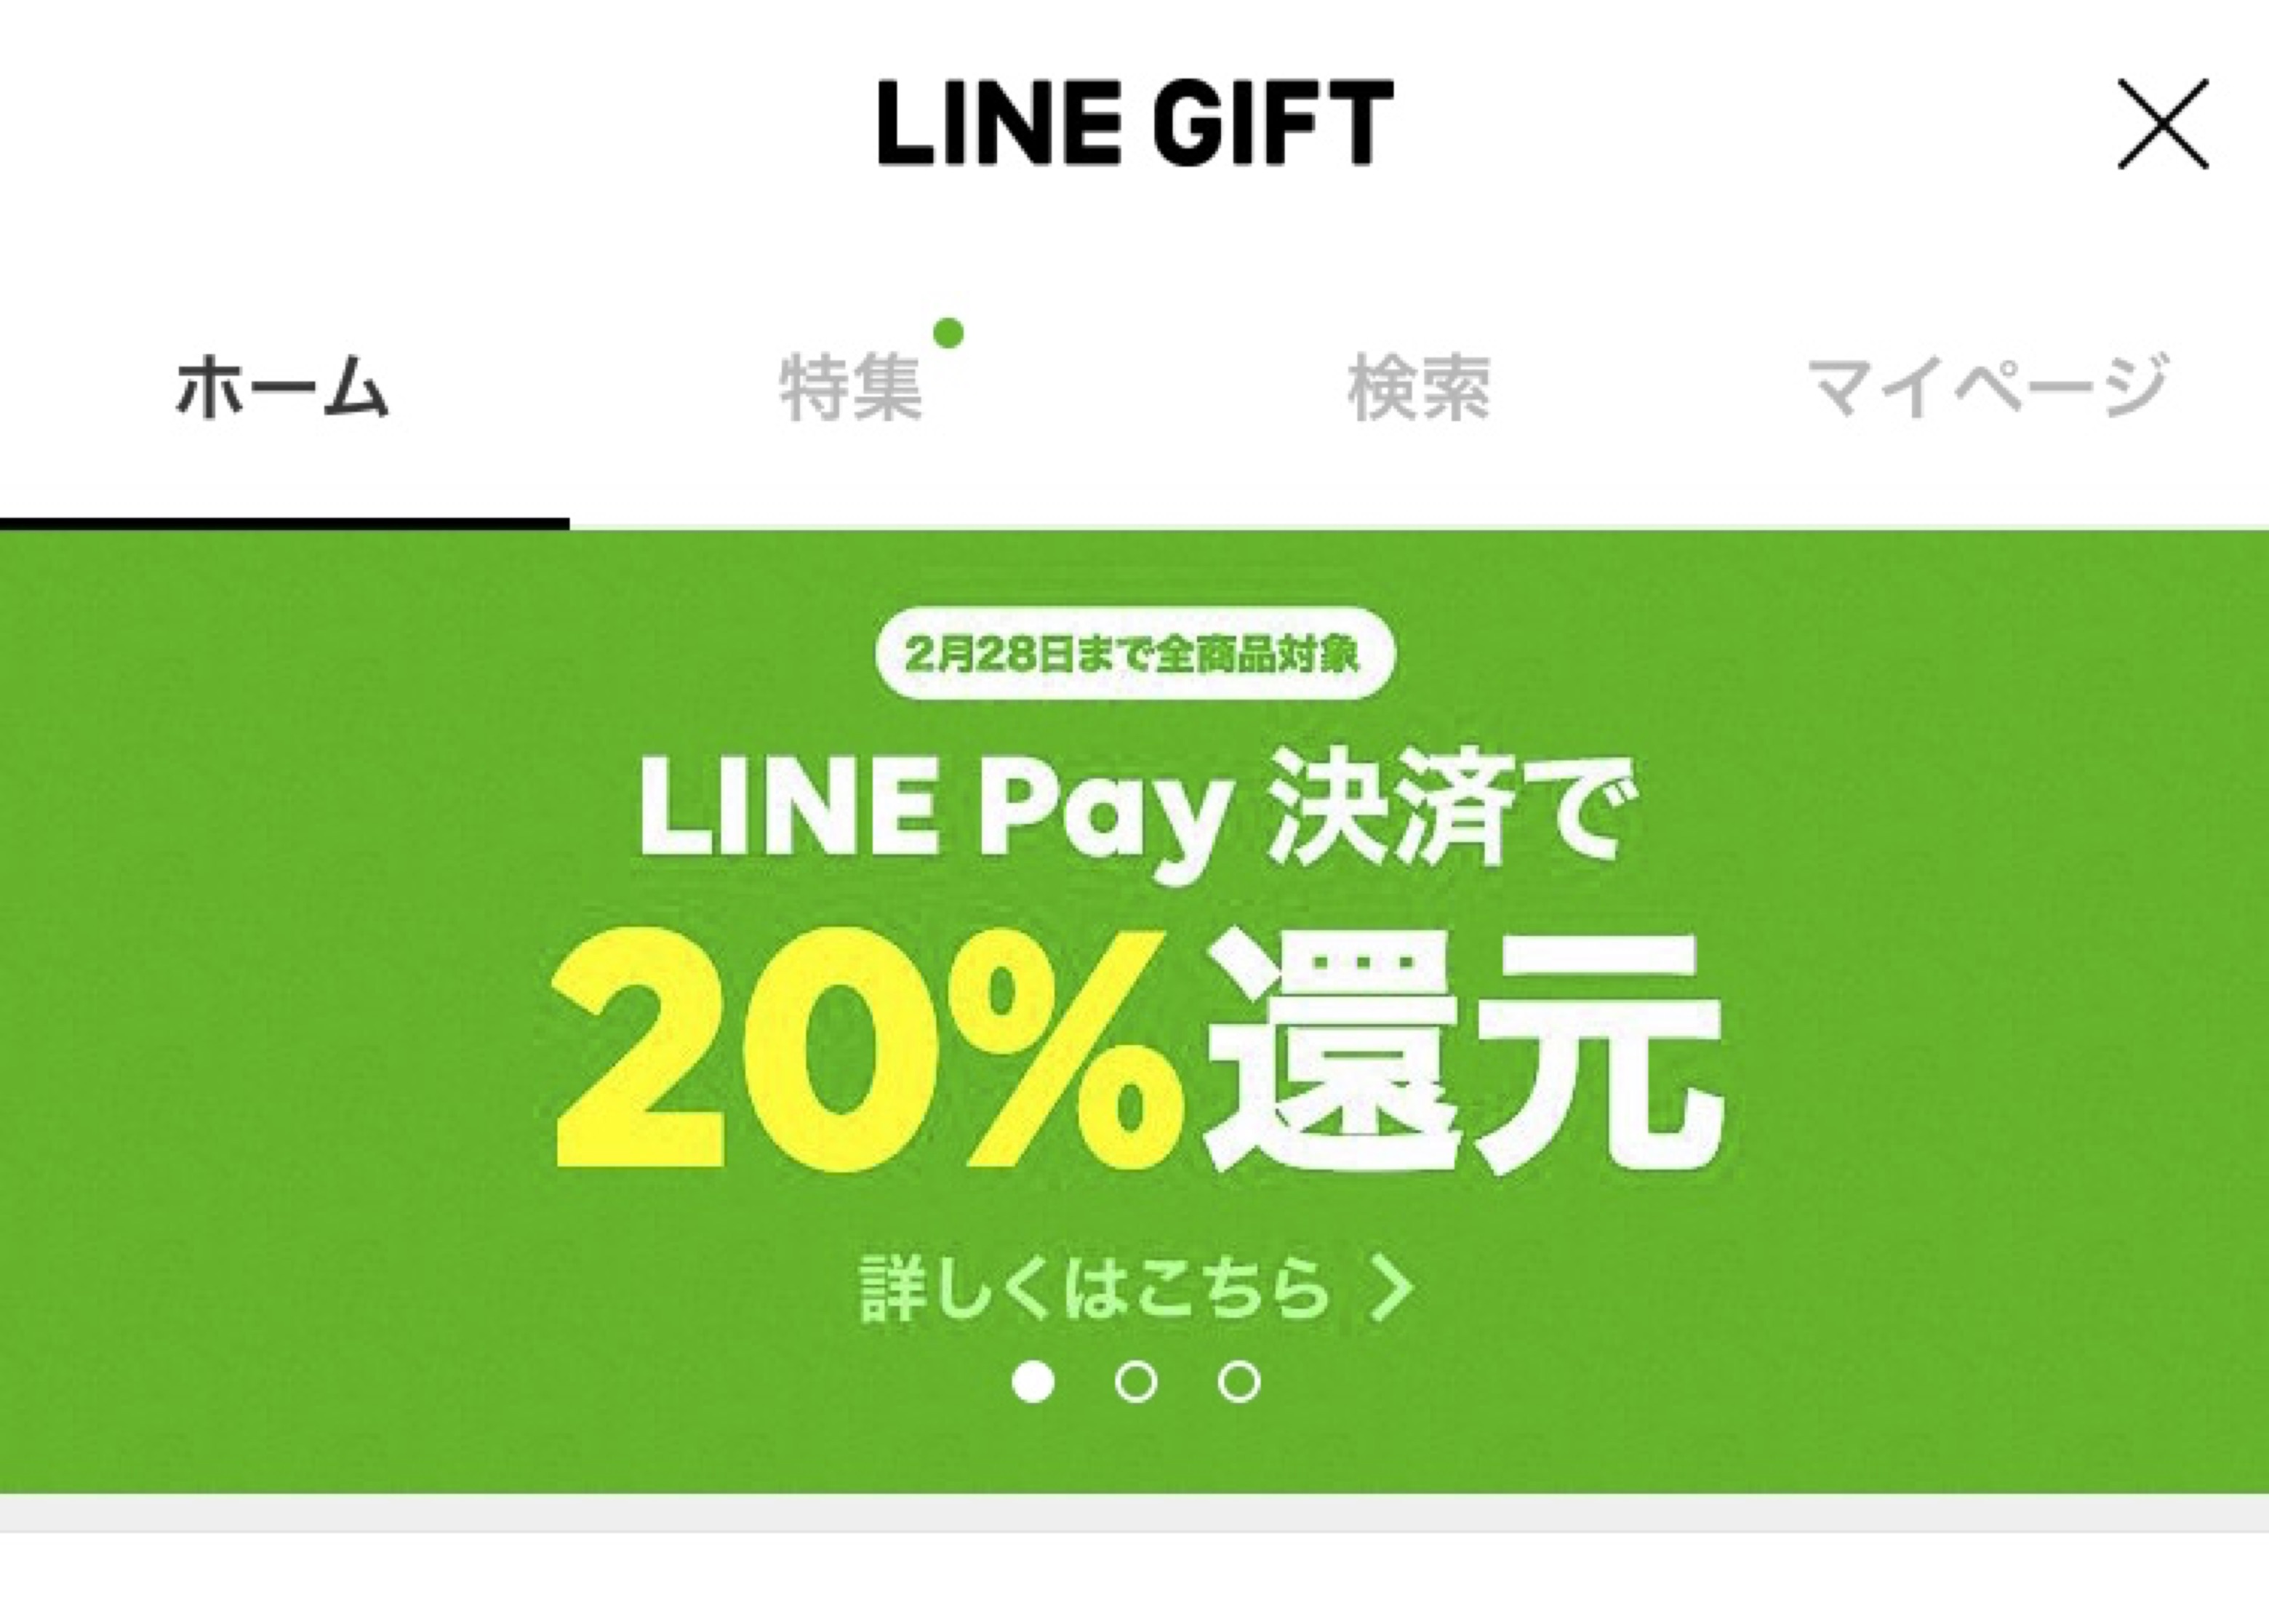 "LINEアプリの無料サービス「LINE